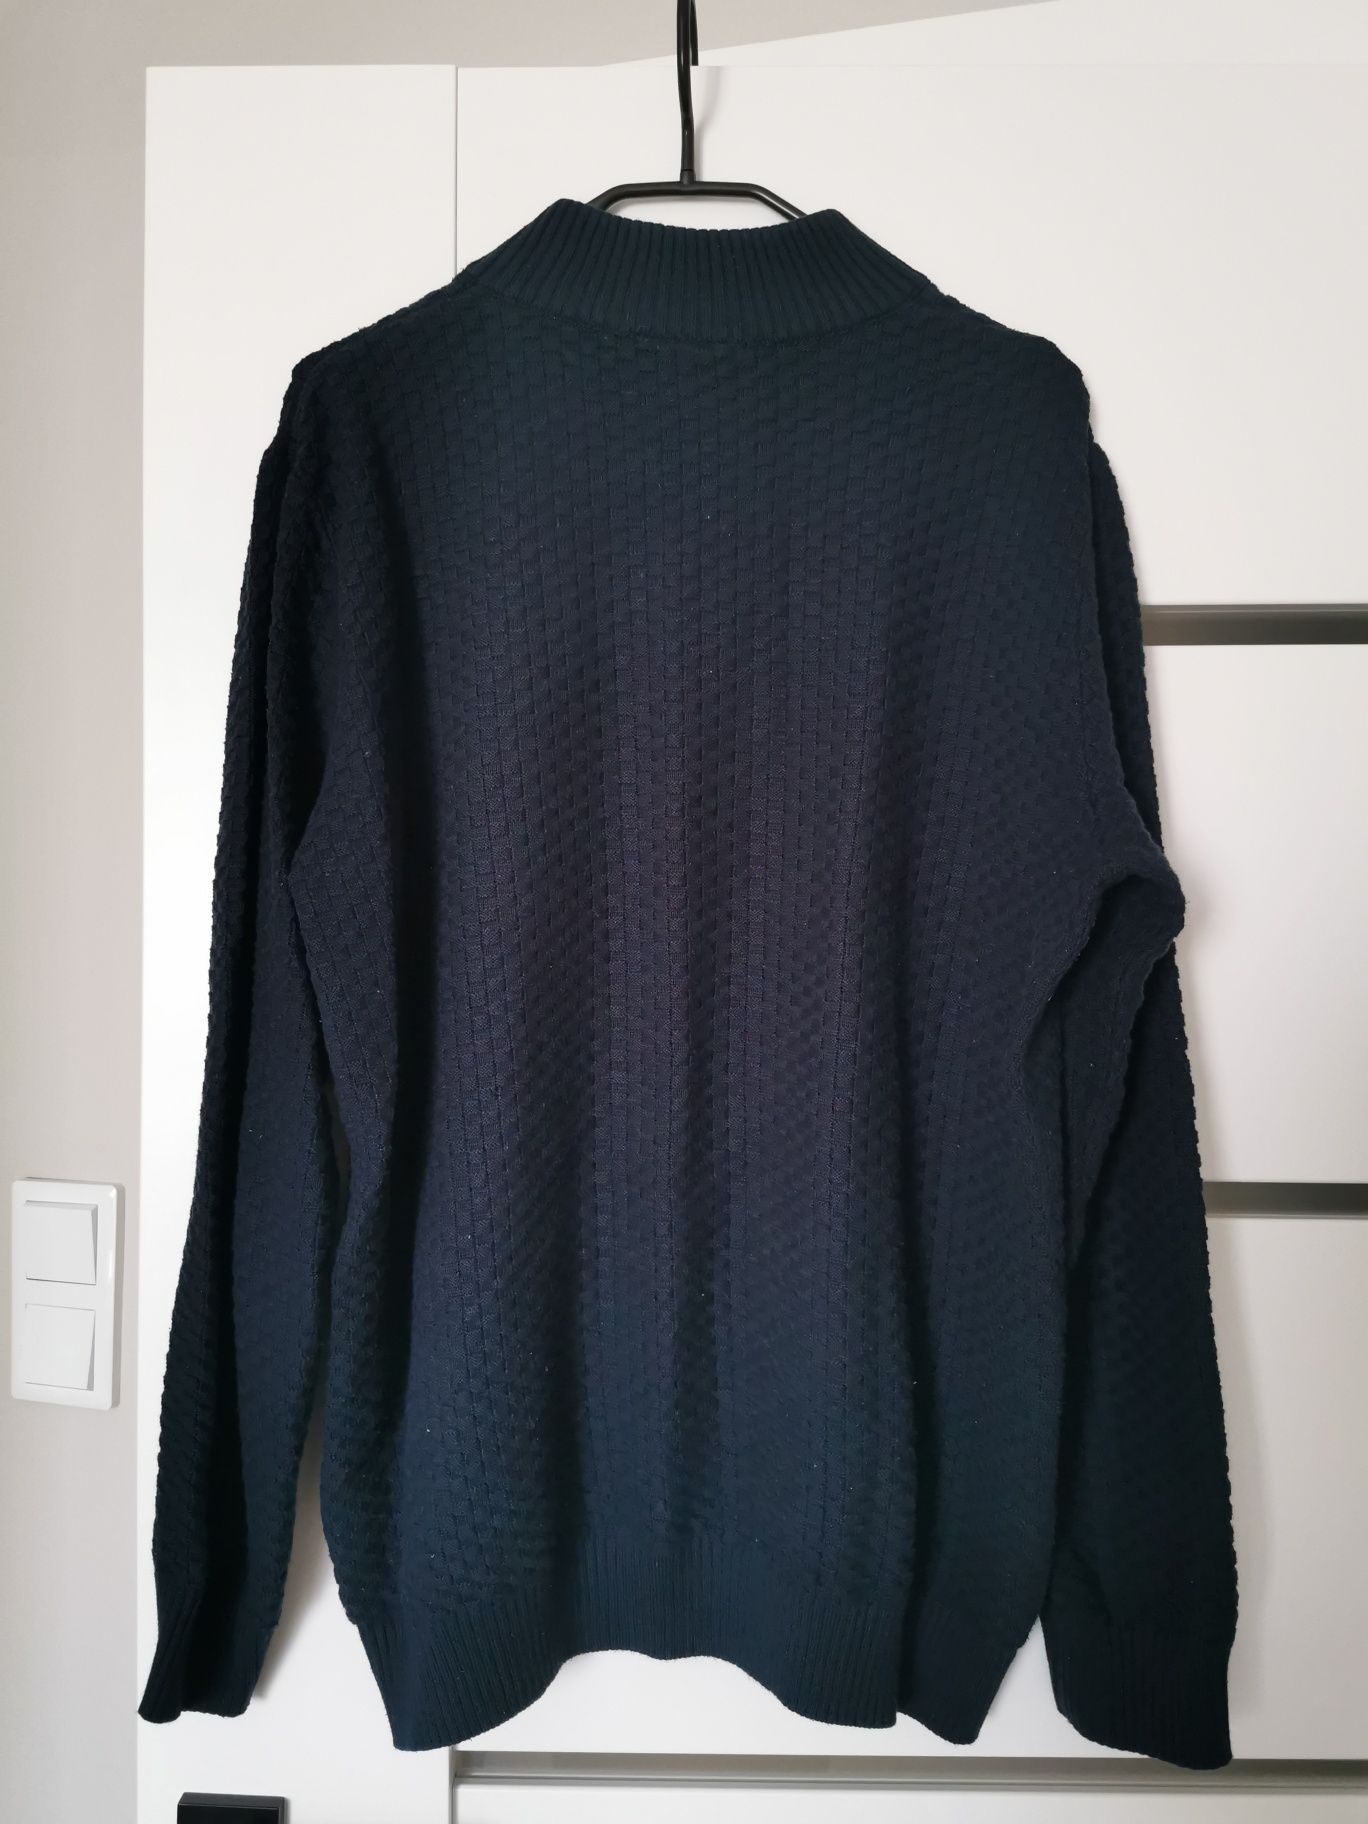 Granatowy, męski sweter XL marki Venerdi